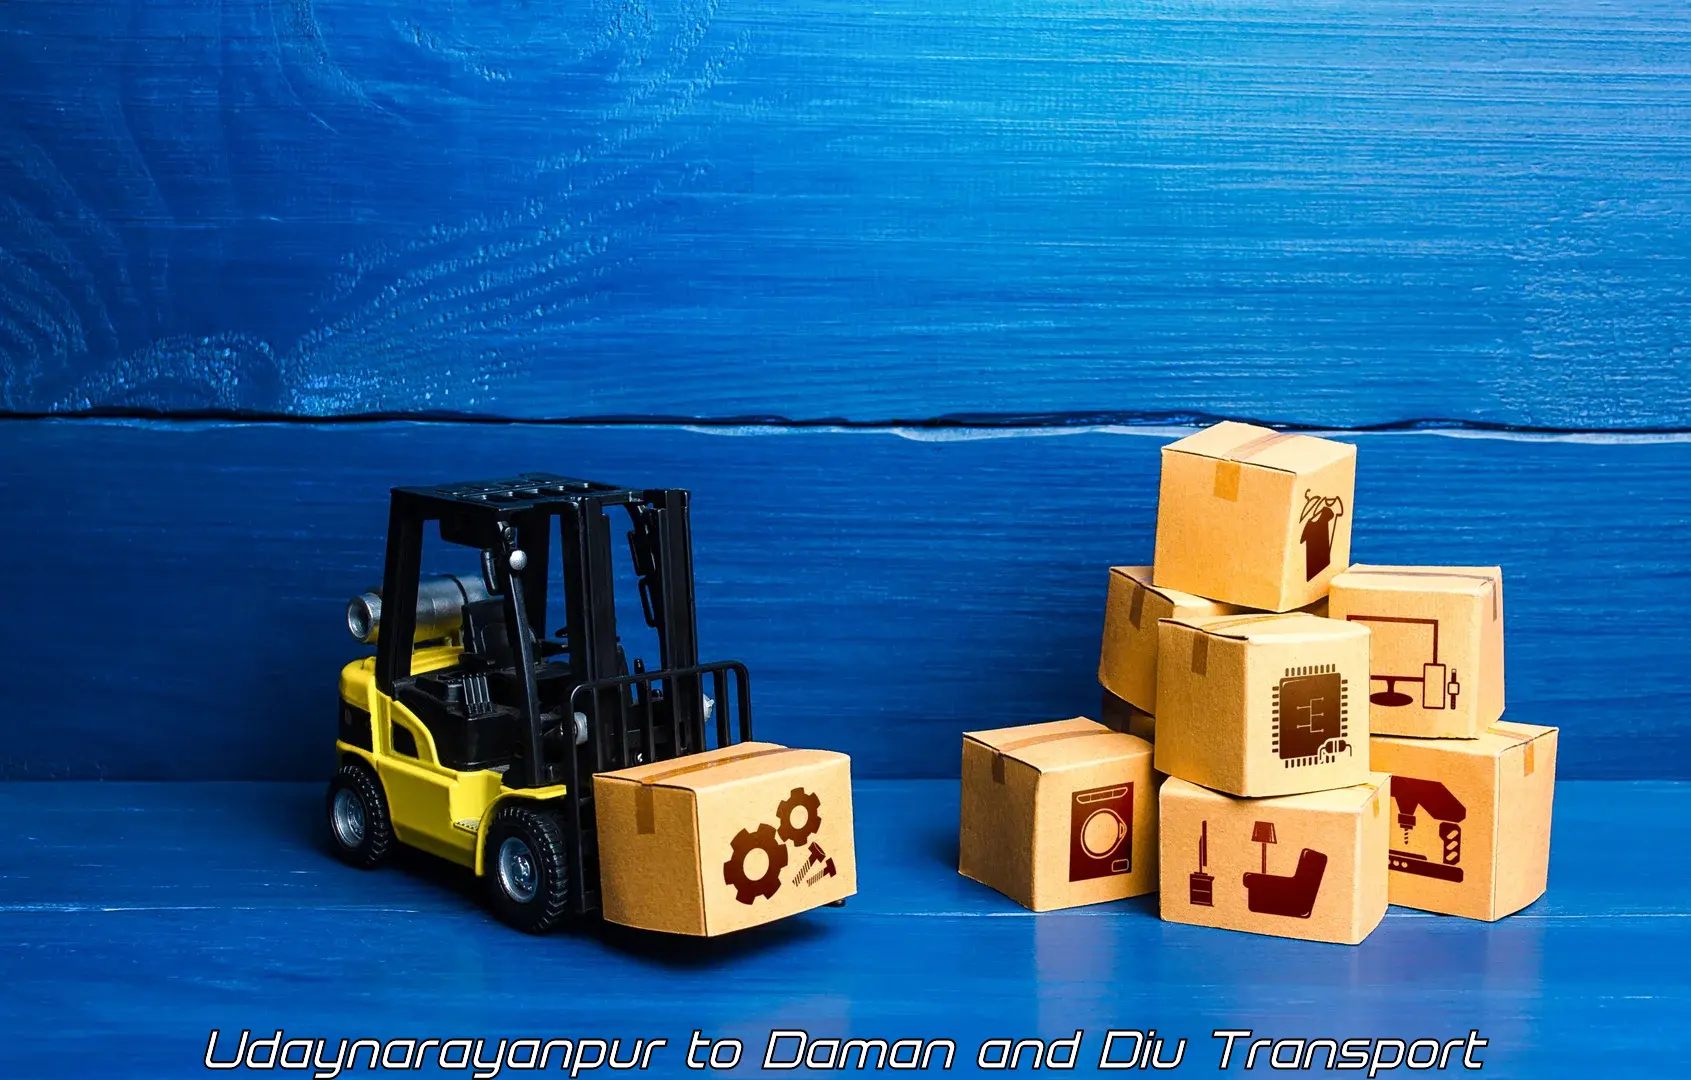 Cargo transport services Udaynarayanpur to Daman and Diu